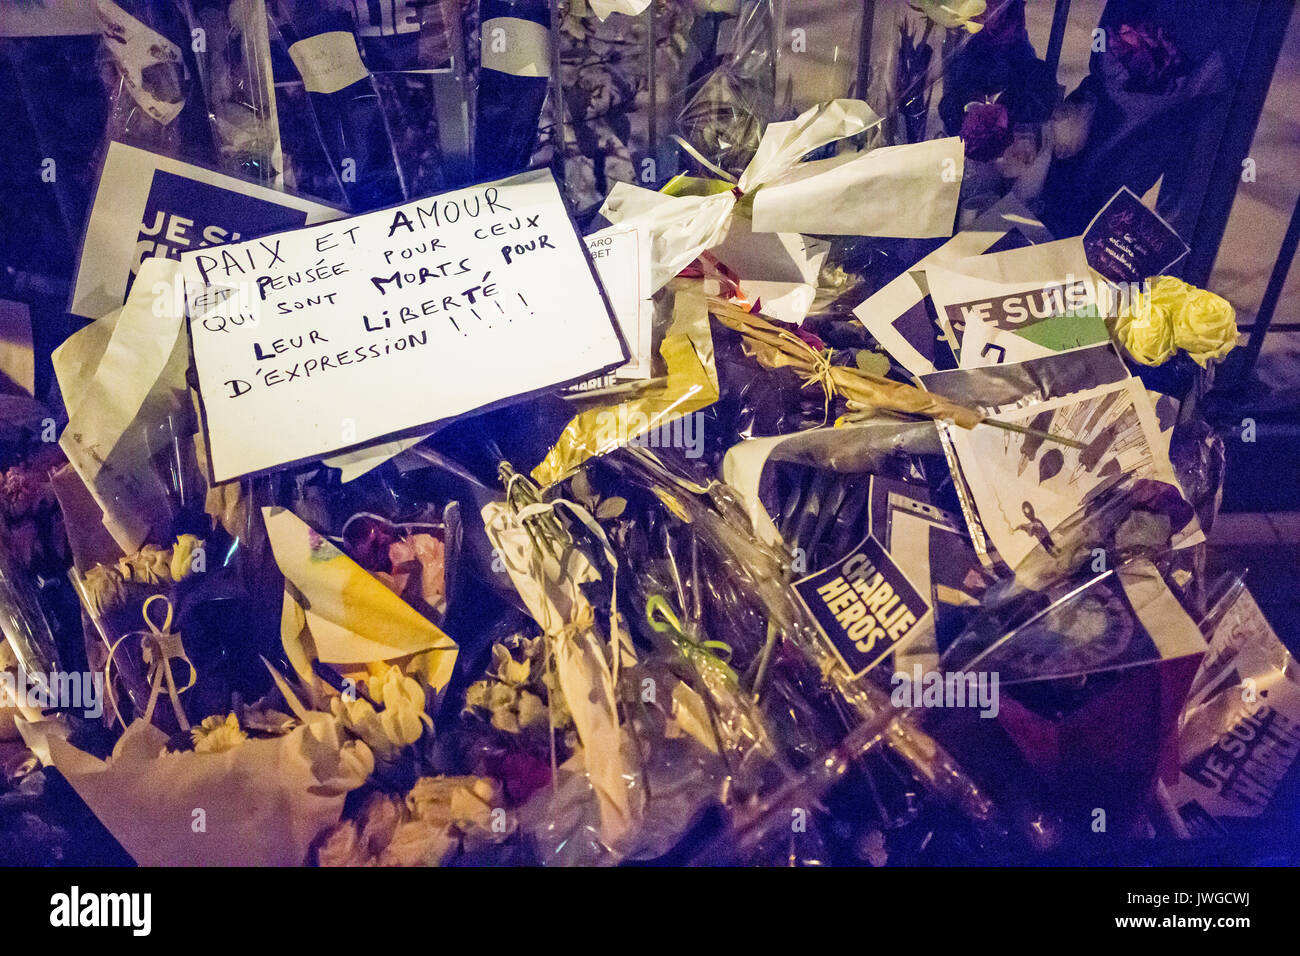 Frieden und Liebe Zeichen stehen heraus unter den Blumen, Paix et amour. Hommage an die Opfer von Charlie Hebdo Tötung in Paris der 7. Januar 2015. Stockfoto